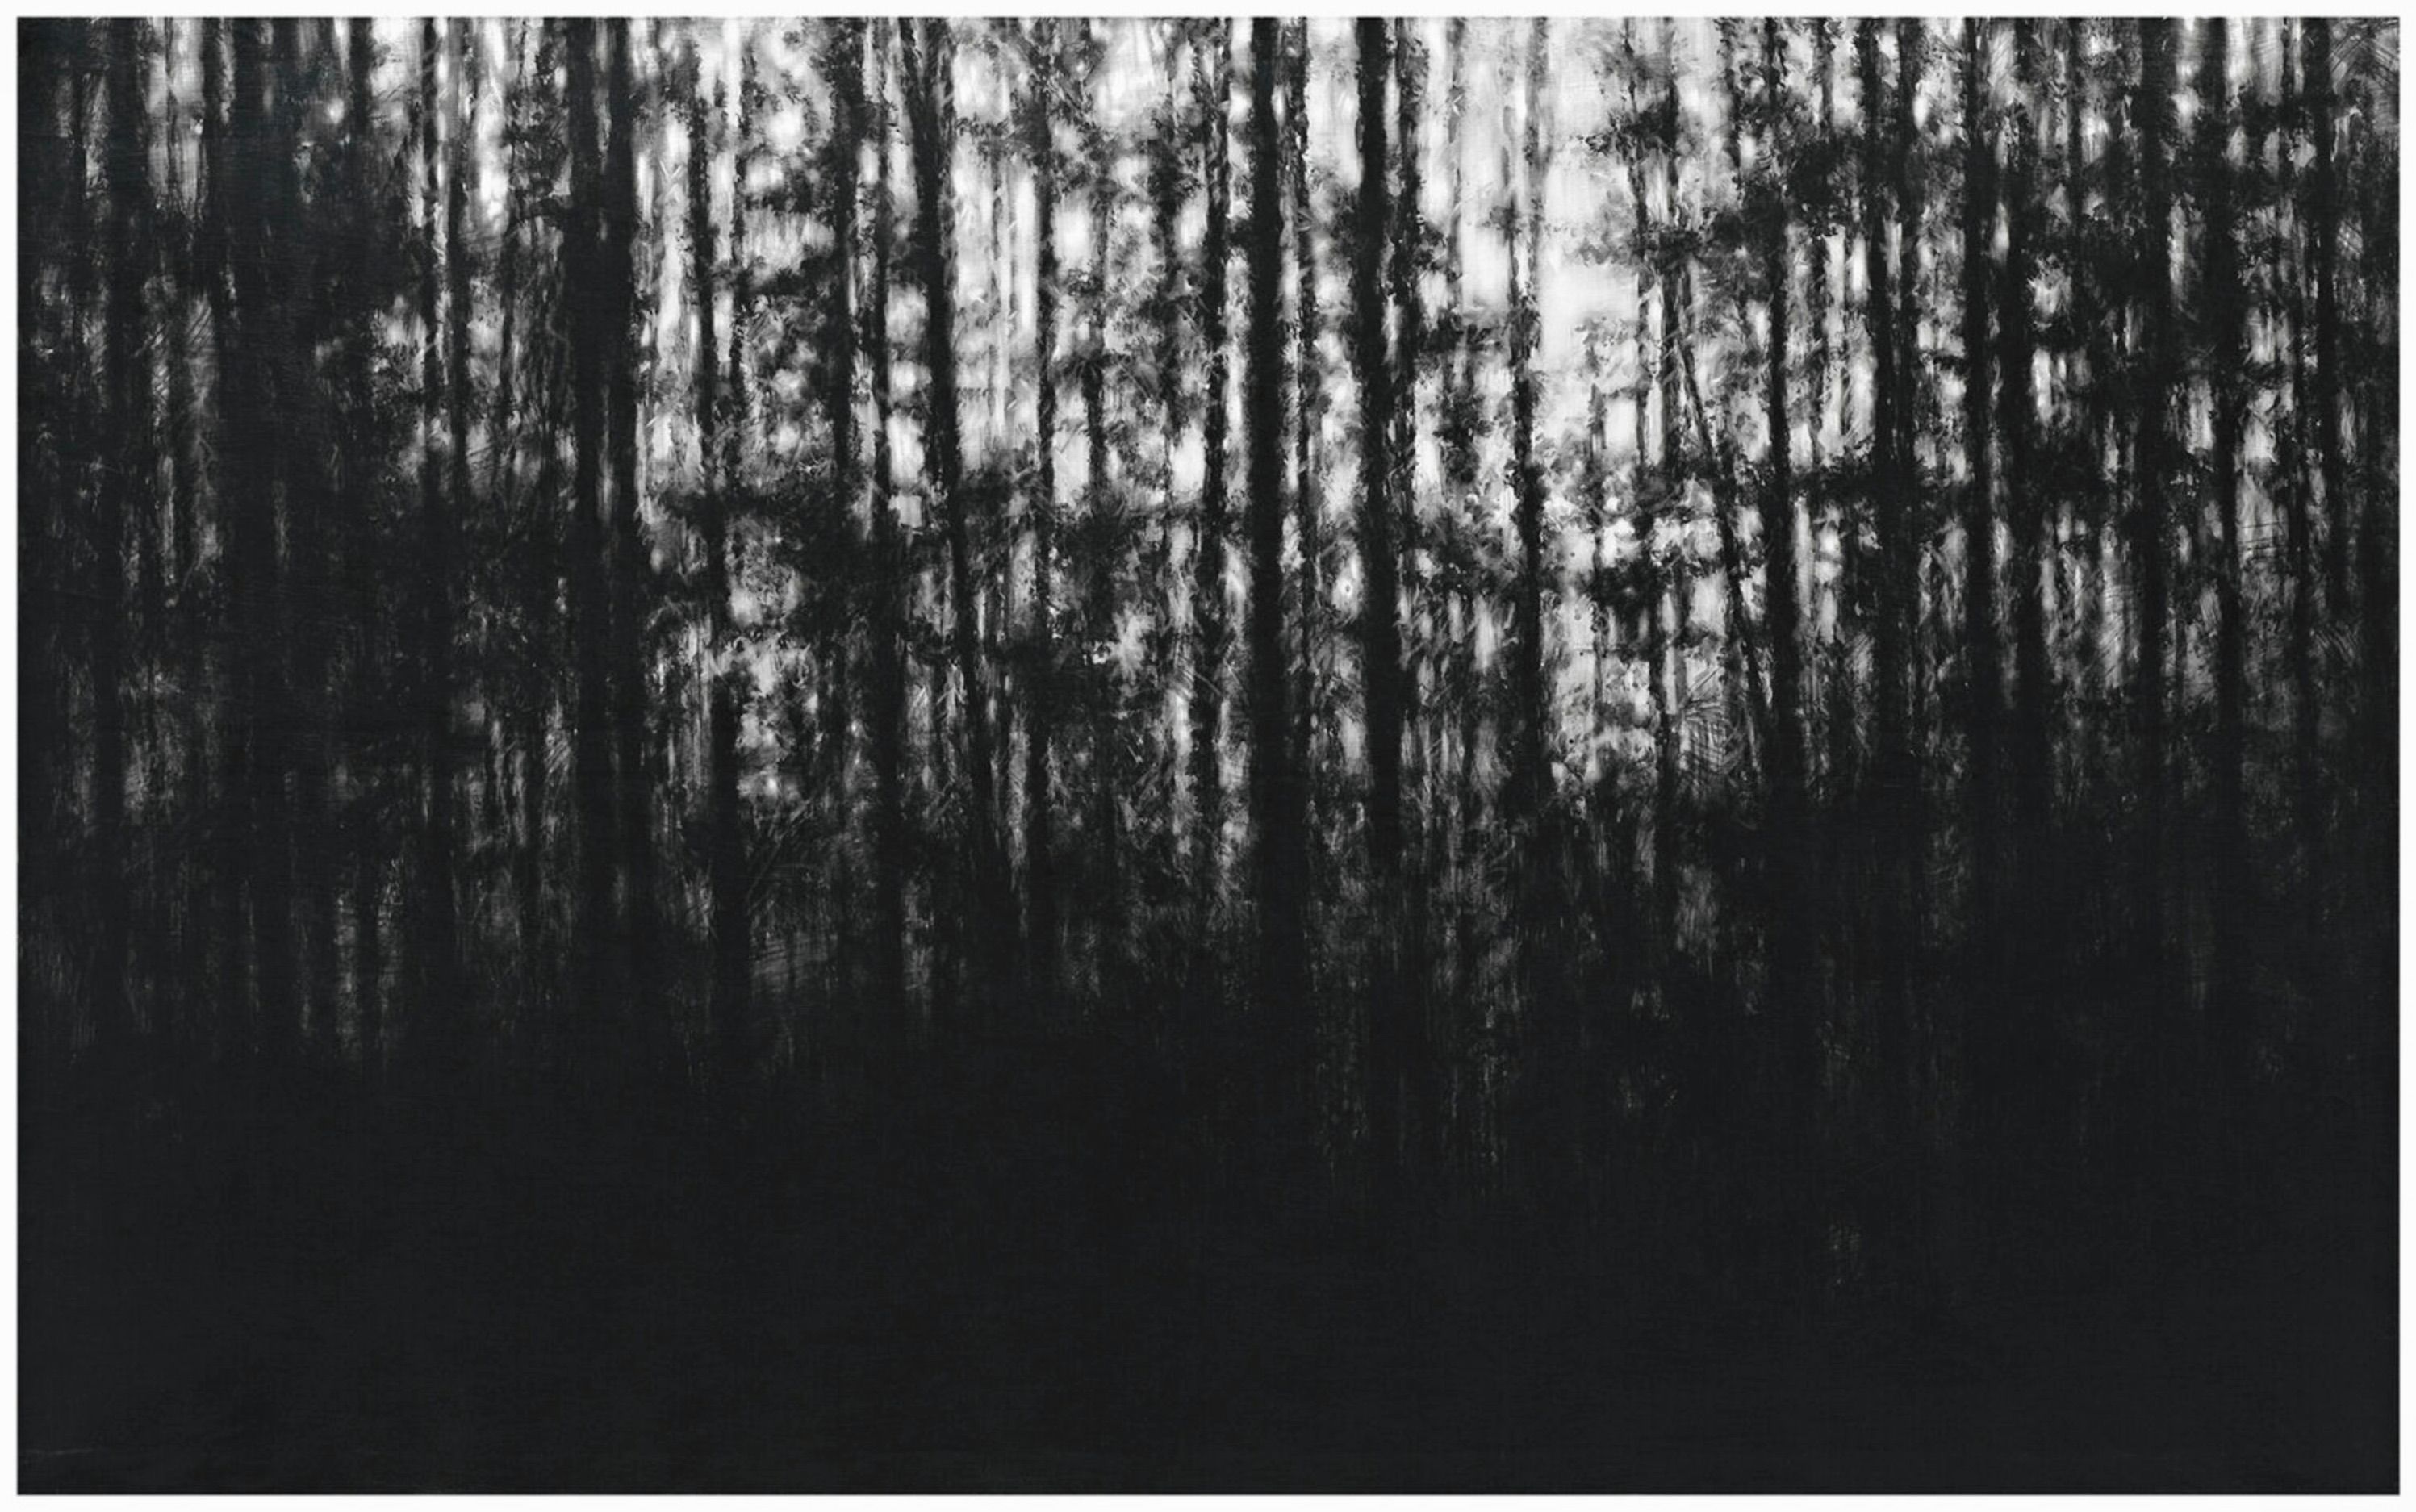 Danja Akulin dibujo a lápiz carbón bosque oscuro de coníferas y cielo descubierto